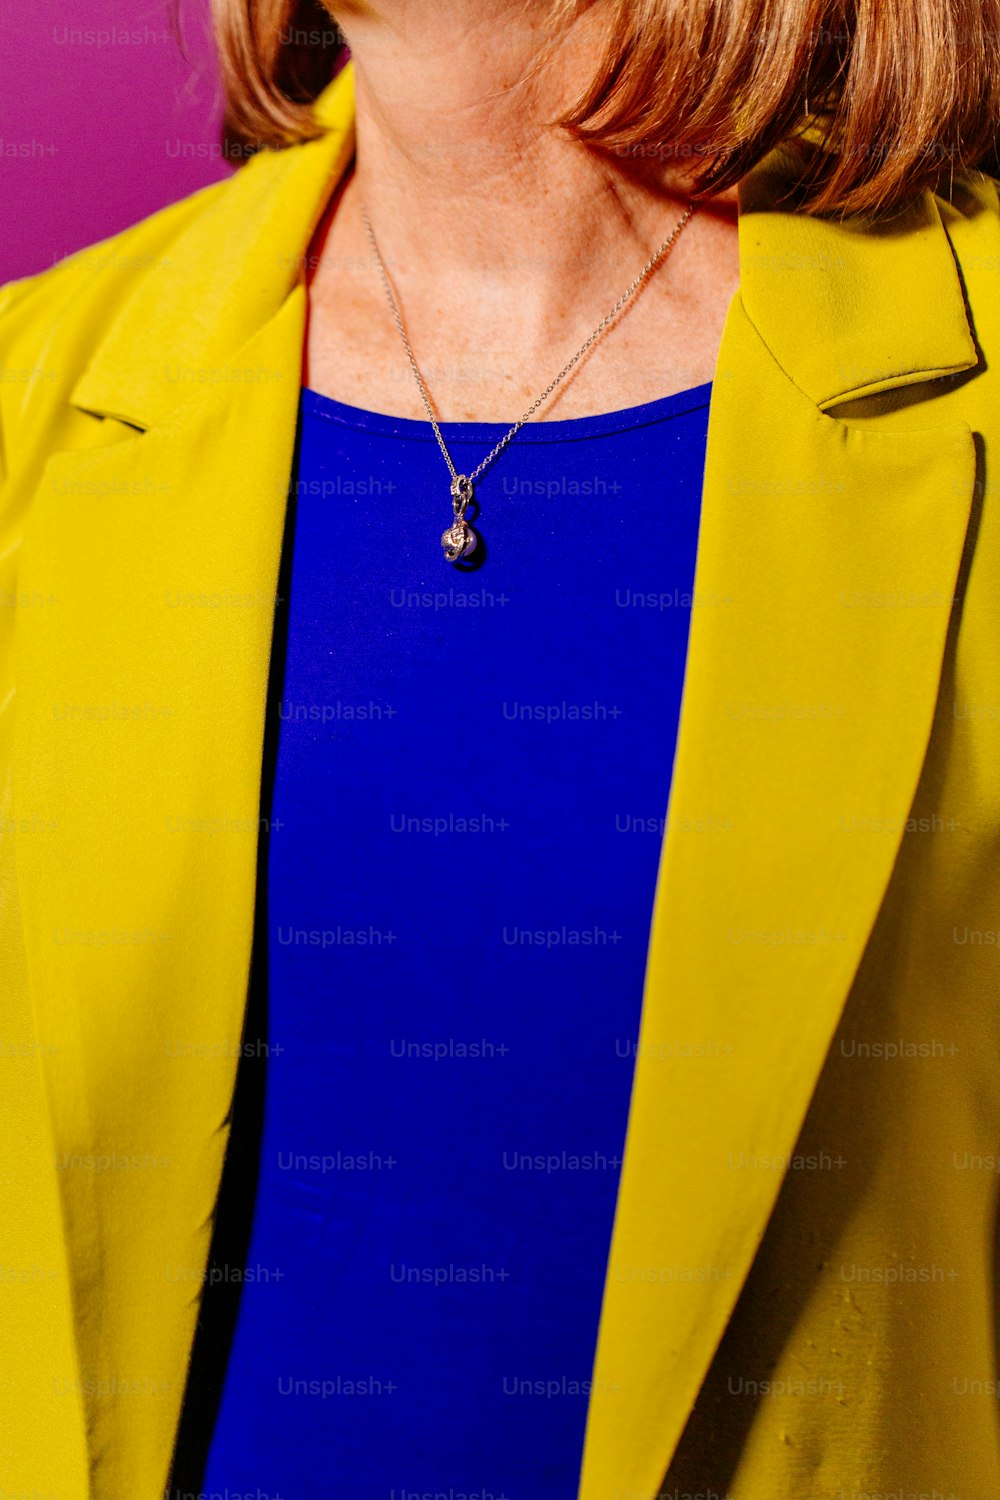 Eine Frau mit gelber Jacke und blauem Oberteil